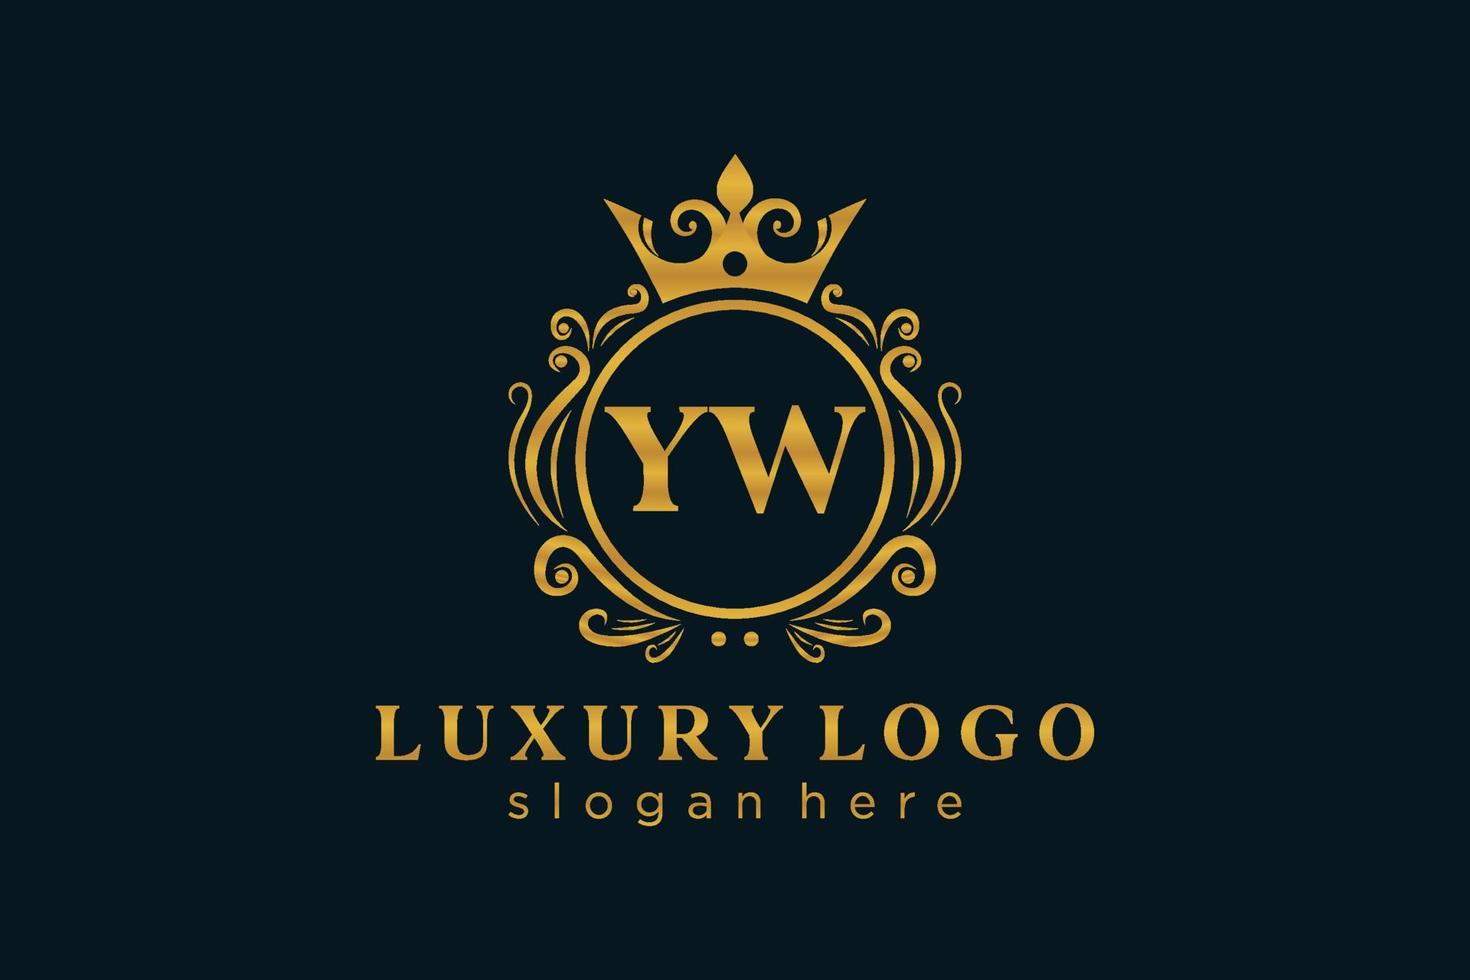 anfängliche yw-Buchstabe königliche Luxus-Logo-Vorlage in Vektorgrafiken für Restaurant, Lizenzgebühren, Boutique, Café, Hotel, heraldisch, Schmuck, Mode und andere Vektorillustrationen. vektor